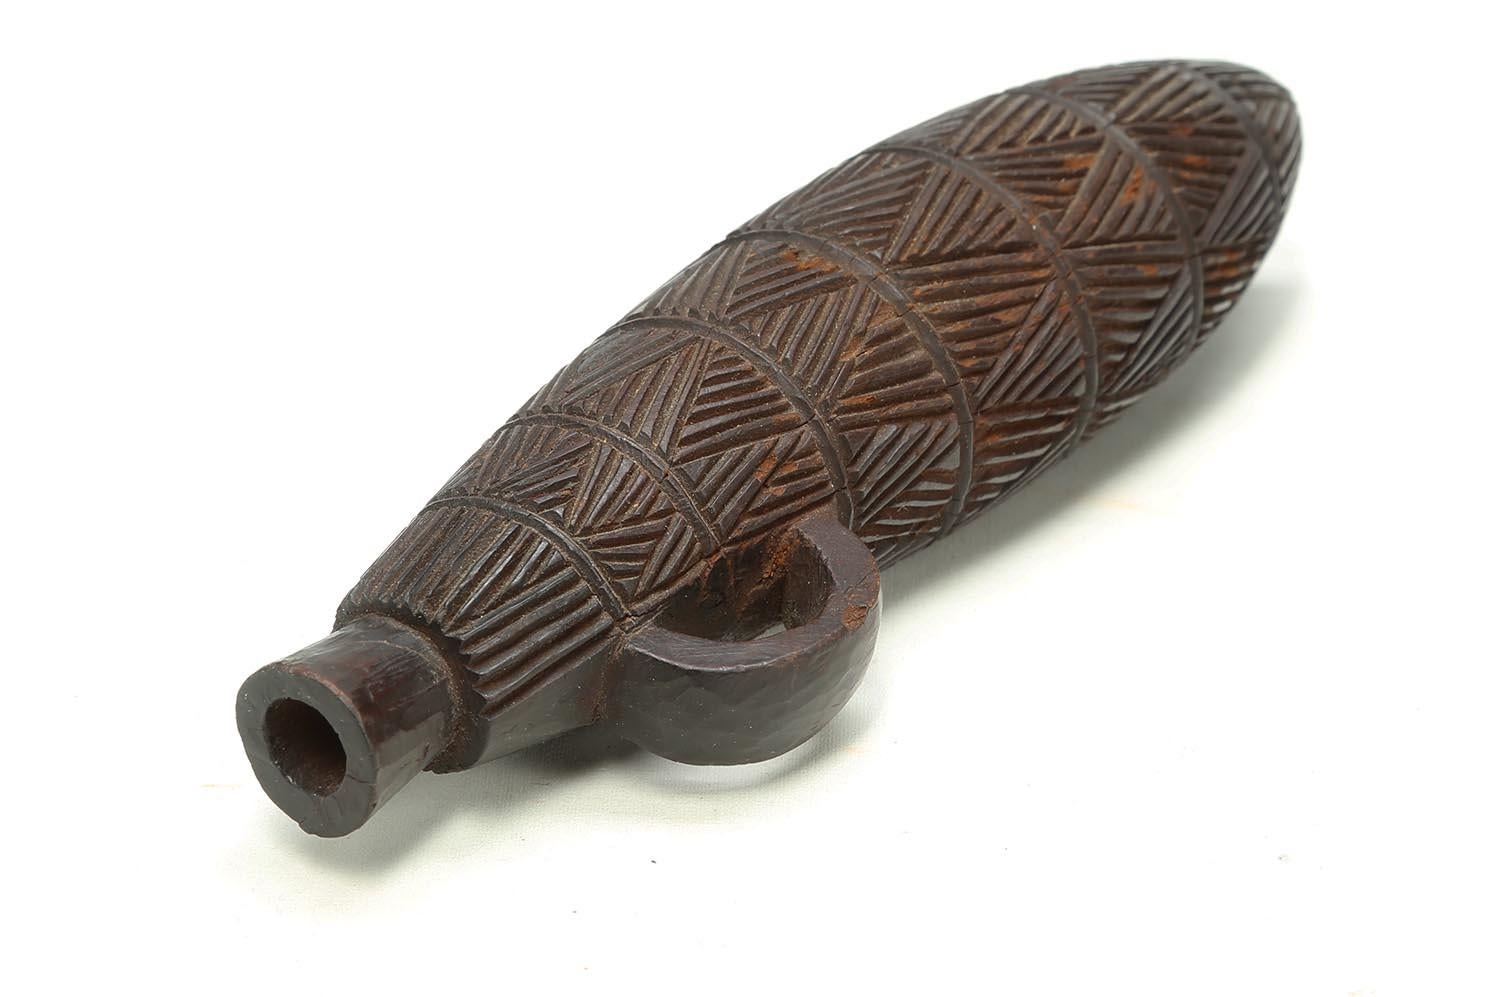 Tabatière en bois sculpté Zulu Tribal, Afrique du Sud

Une tabatière finement sculptée avec de grands motifs géométriques incisés, un bel exemple du travail détaillé pour lequel les Zulu sont connus. Début du 20e siècle, 7 pouces de haut, en très